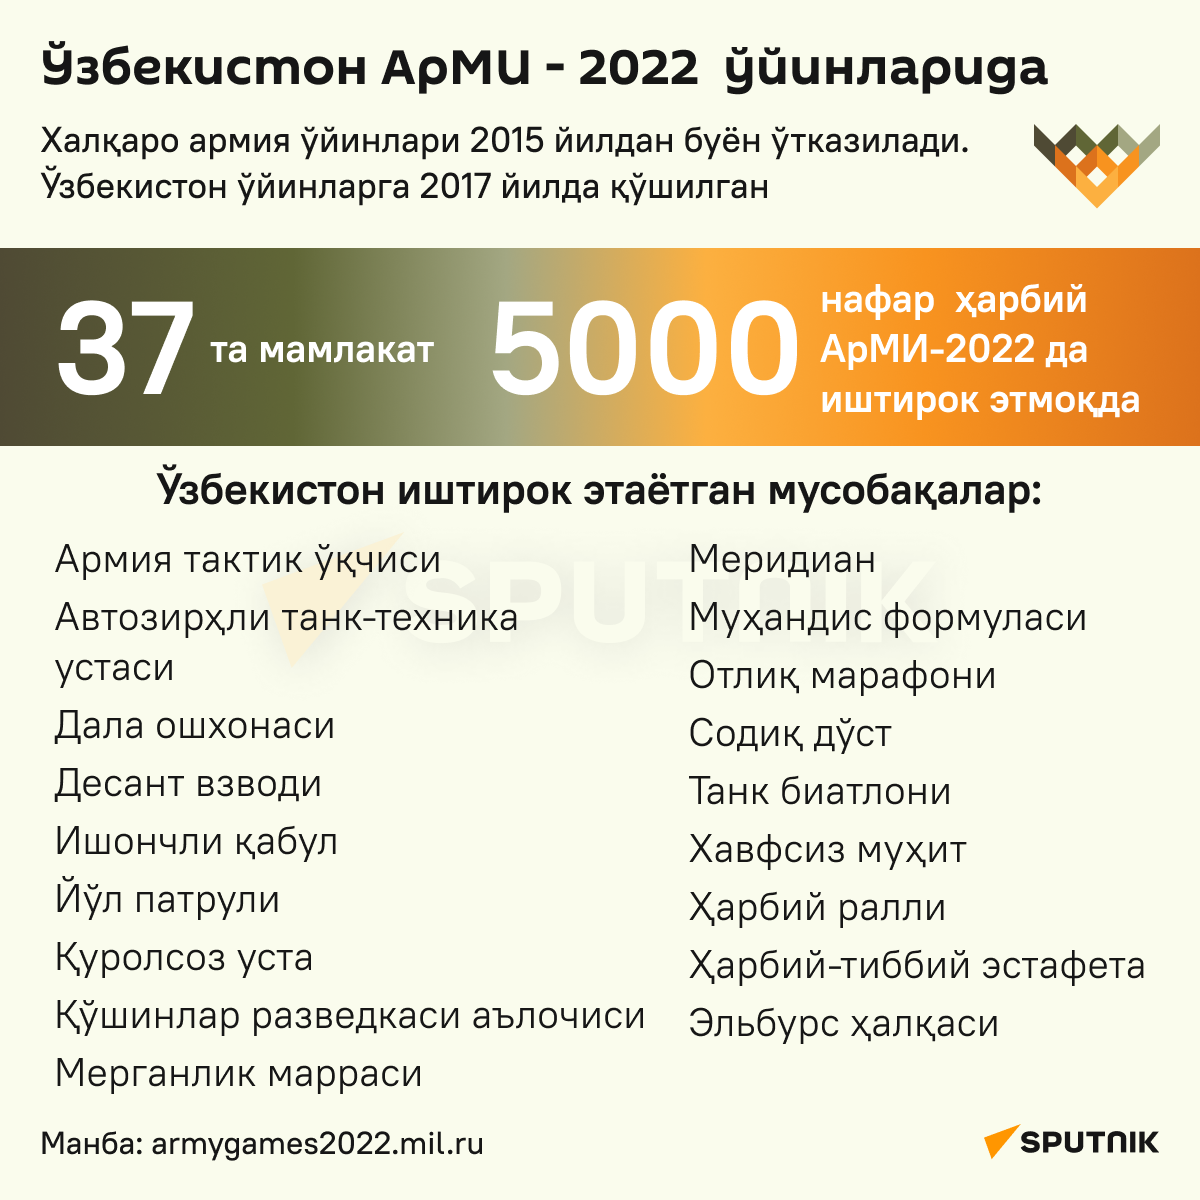 Uzbekiston ArMI-2022 uyinlarida - Sputnik O‘zbekiston